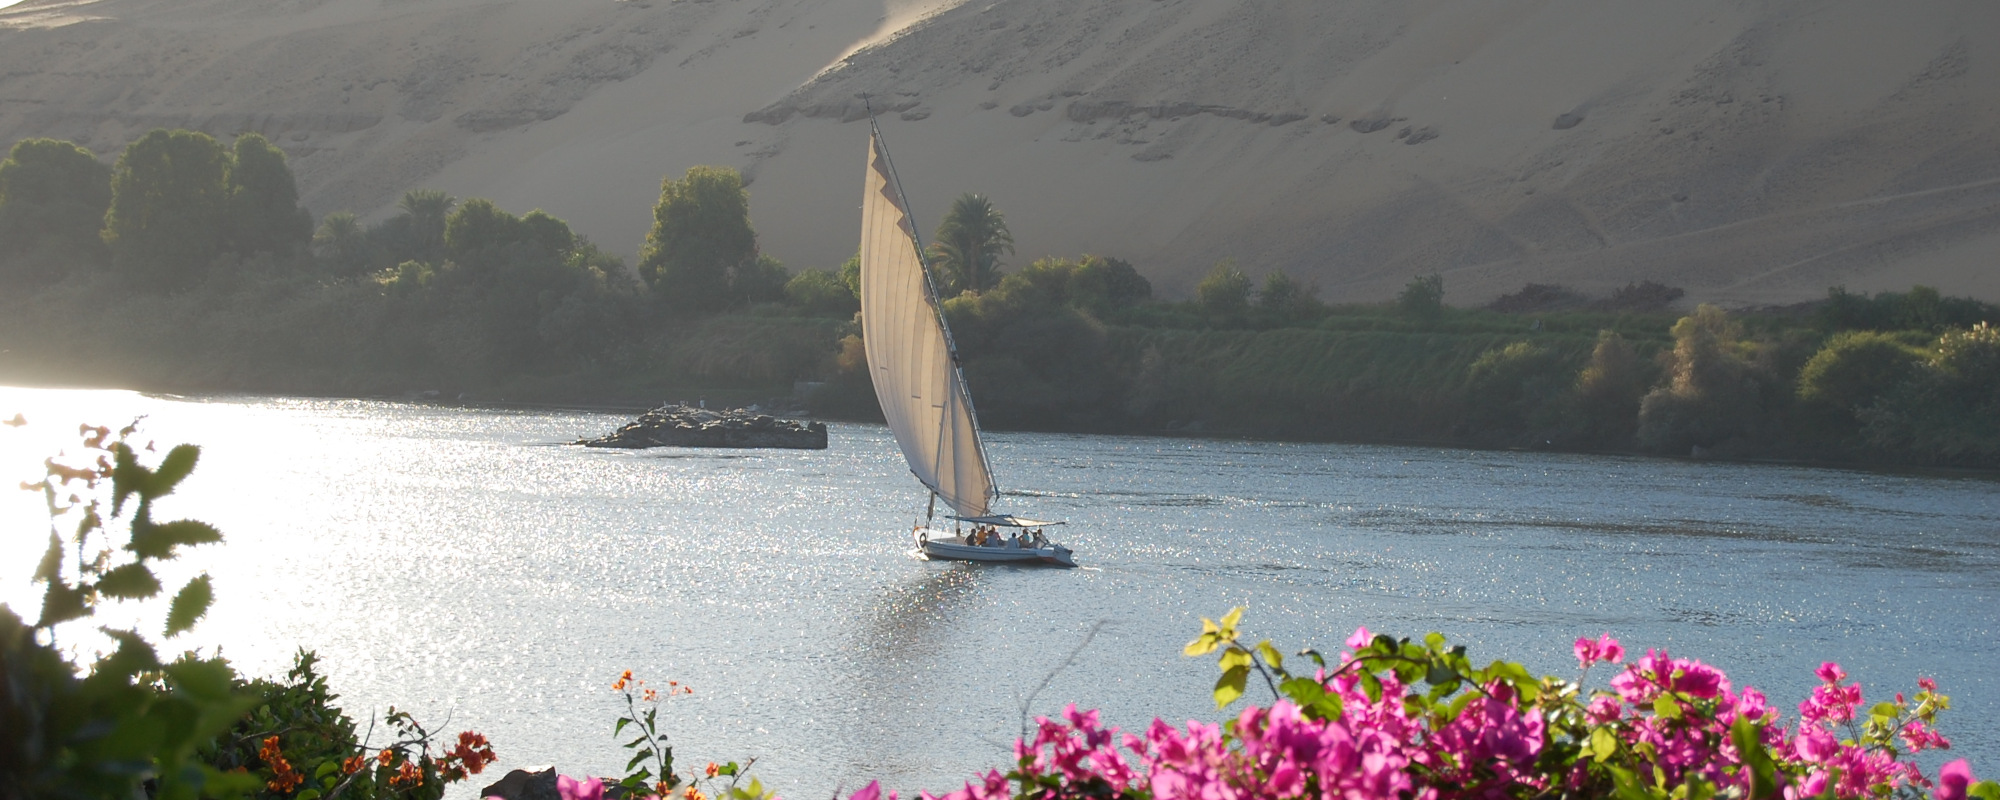 Ägypten - Nil mit Boot